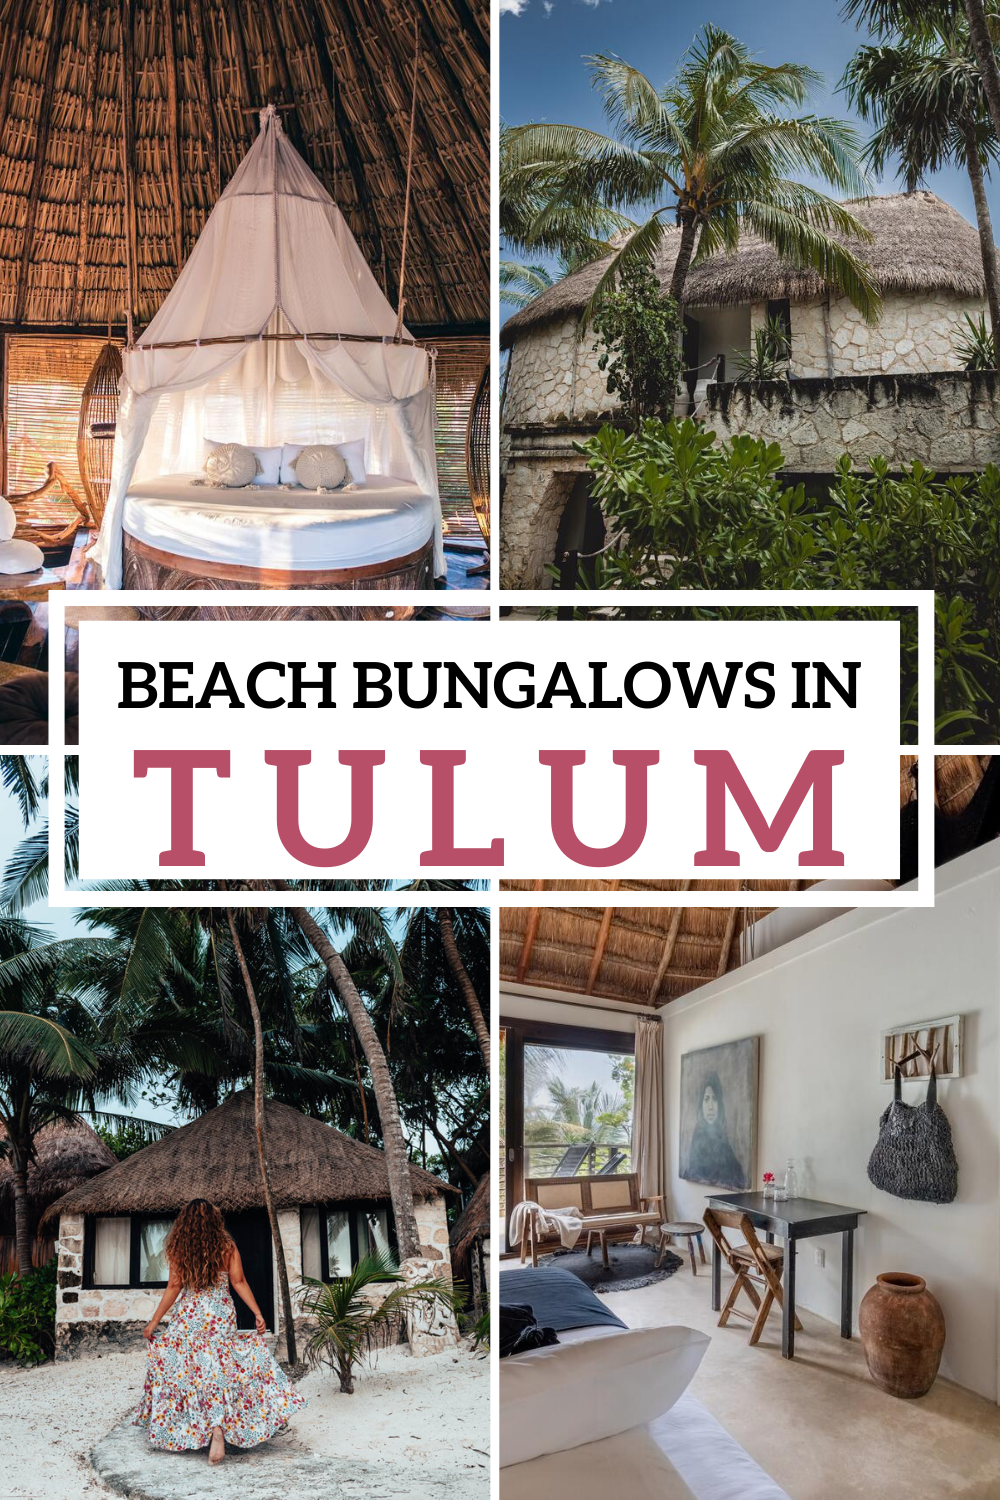 Beach Bungalows in Tulum